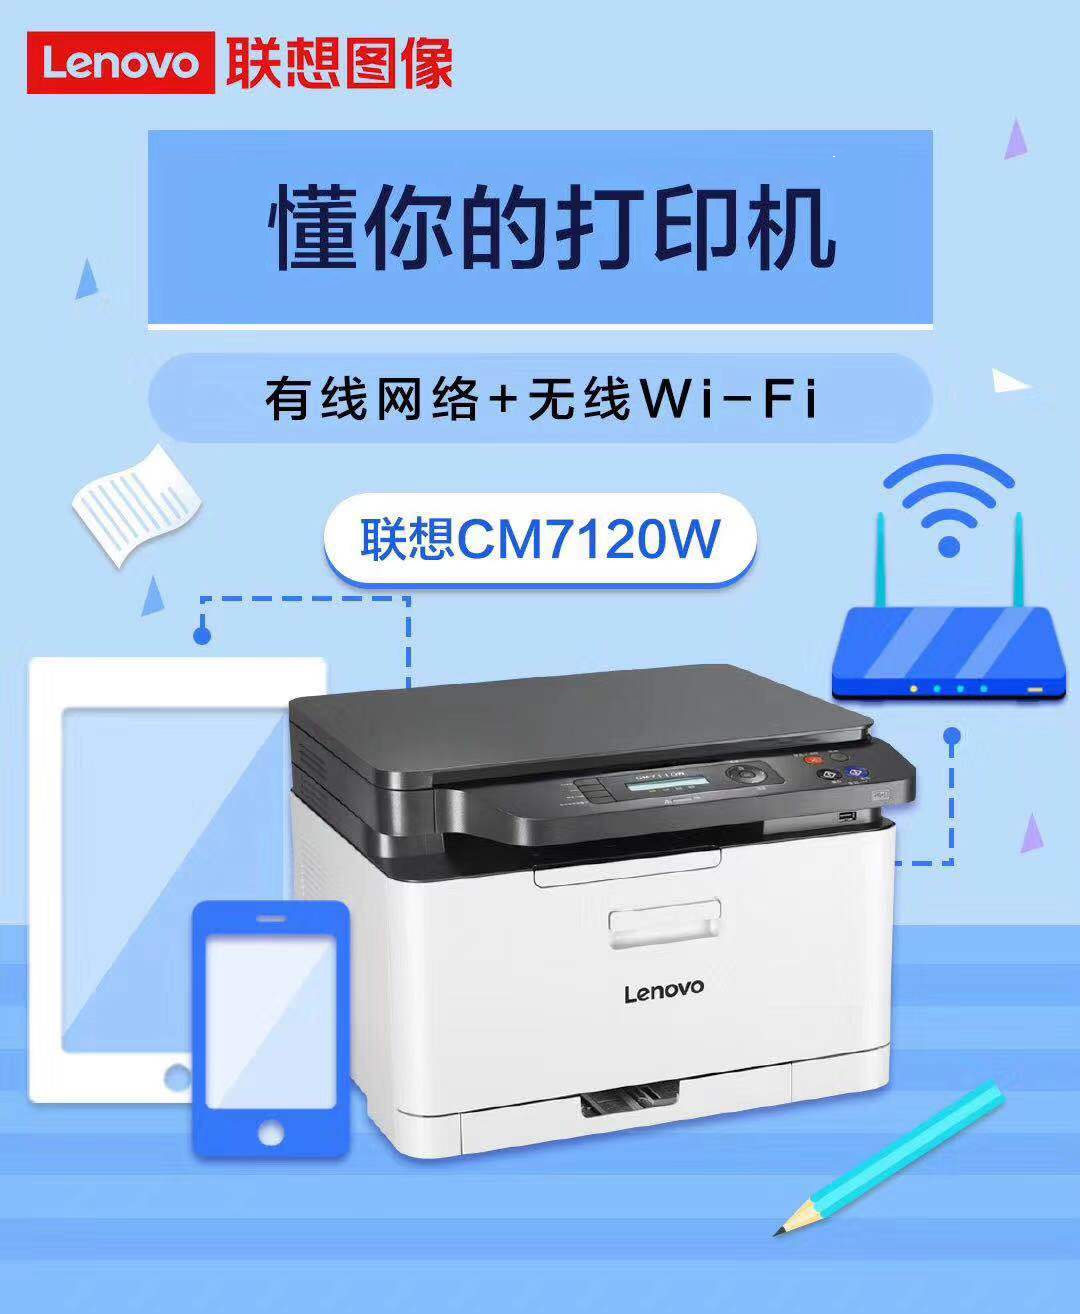 联想CM7120W彩色激光打印机一体机wifi无线商务办公小型家用照片多功能A4打印复印扫描红头文件CS1831W 7110W - 图3